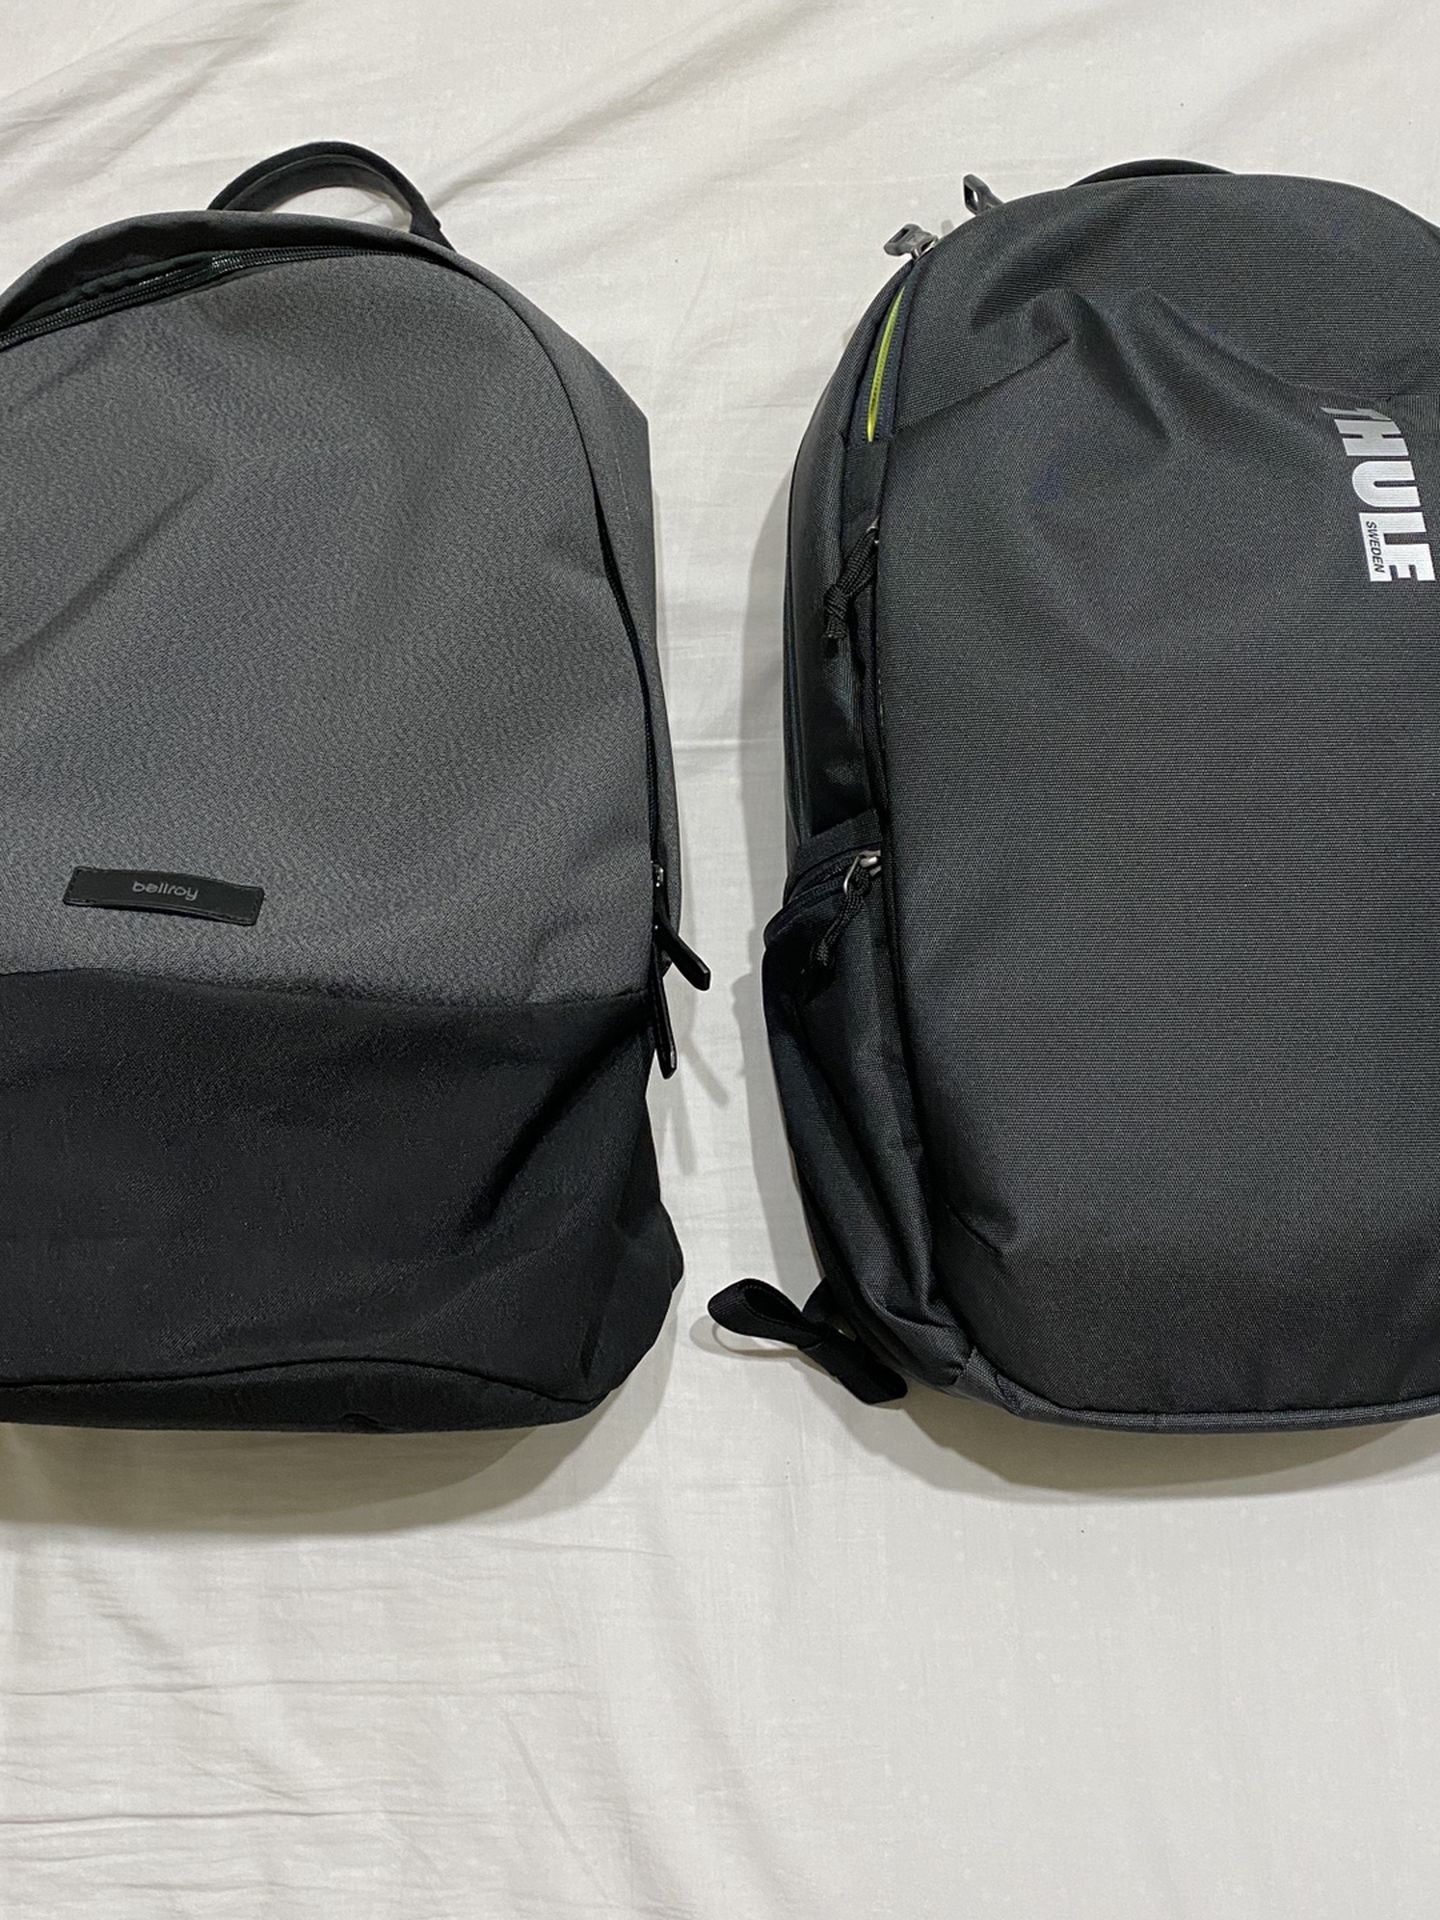 2 Backpacks For $100